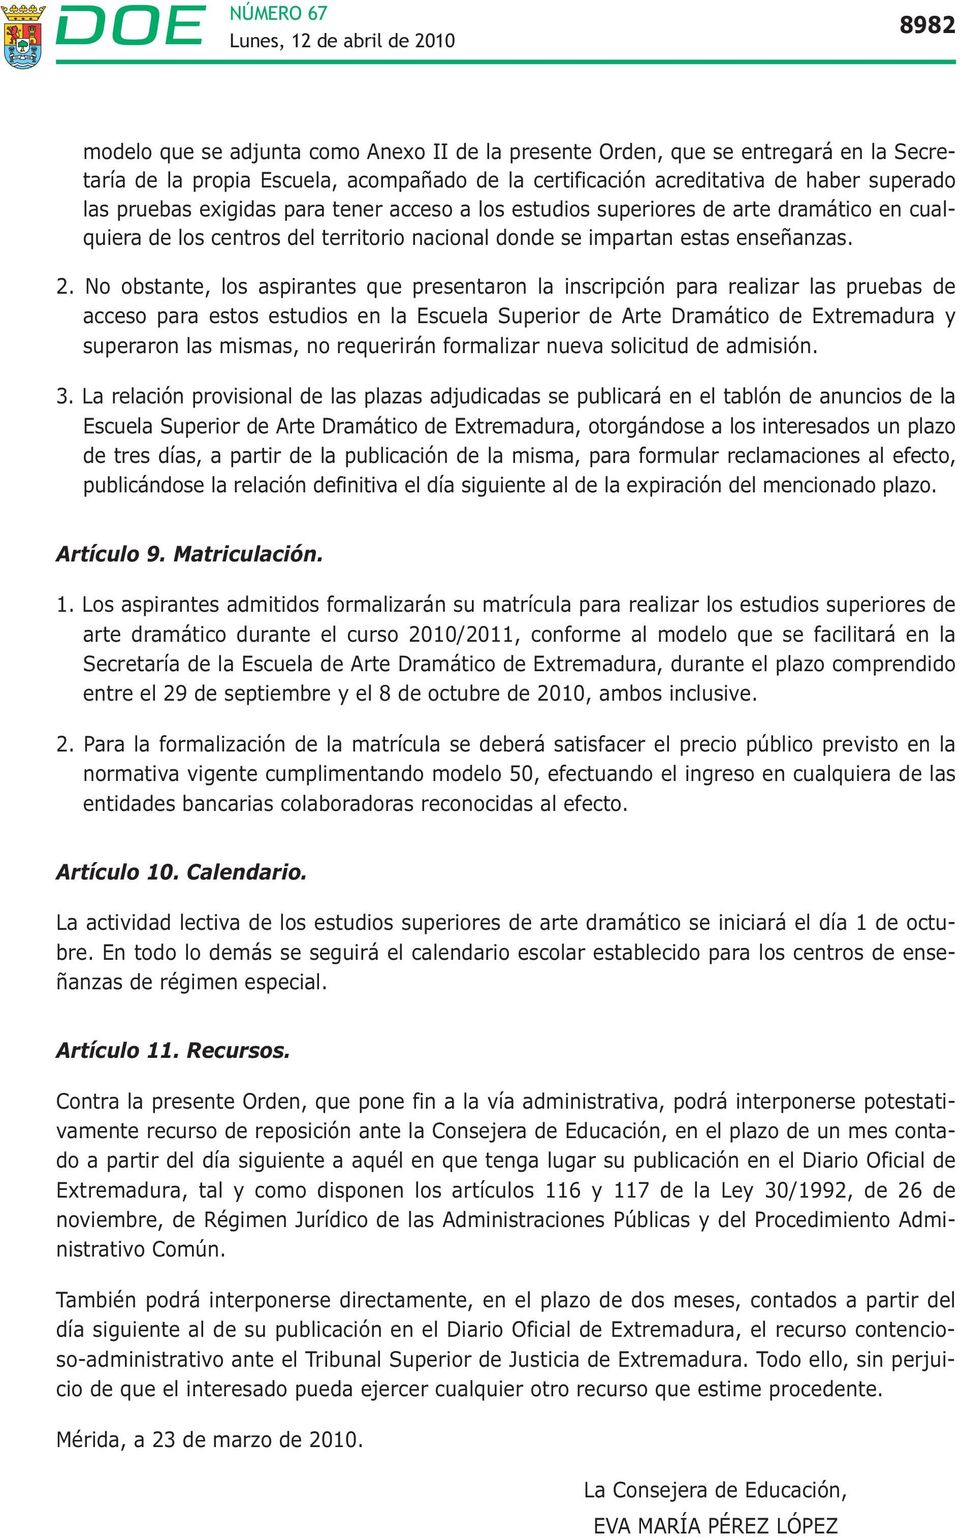 No obstante, los aspirantes que presentaron la inscripción para realizar las pruebas de acceso para estos estudios en la Escuela Superior de Arte Dramático de Extremadura y superaron las mismas, no